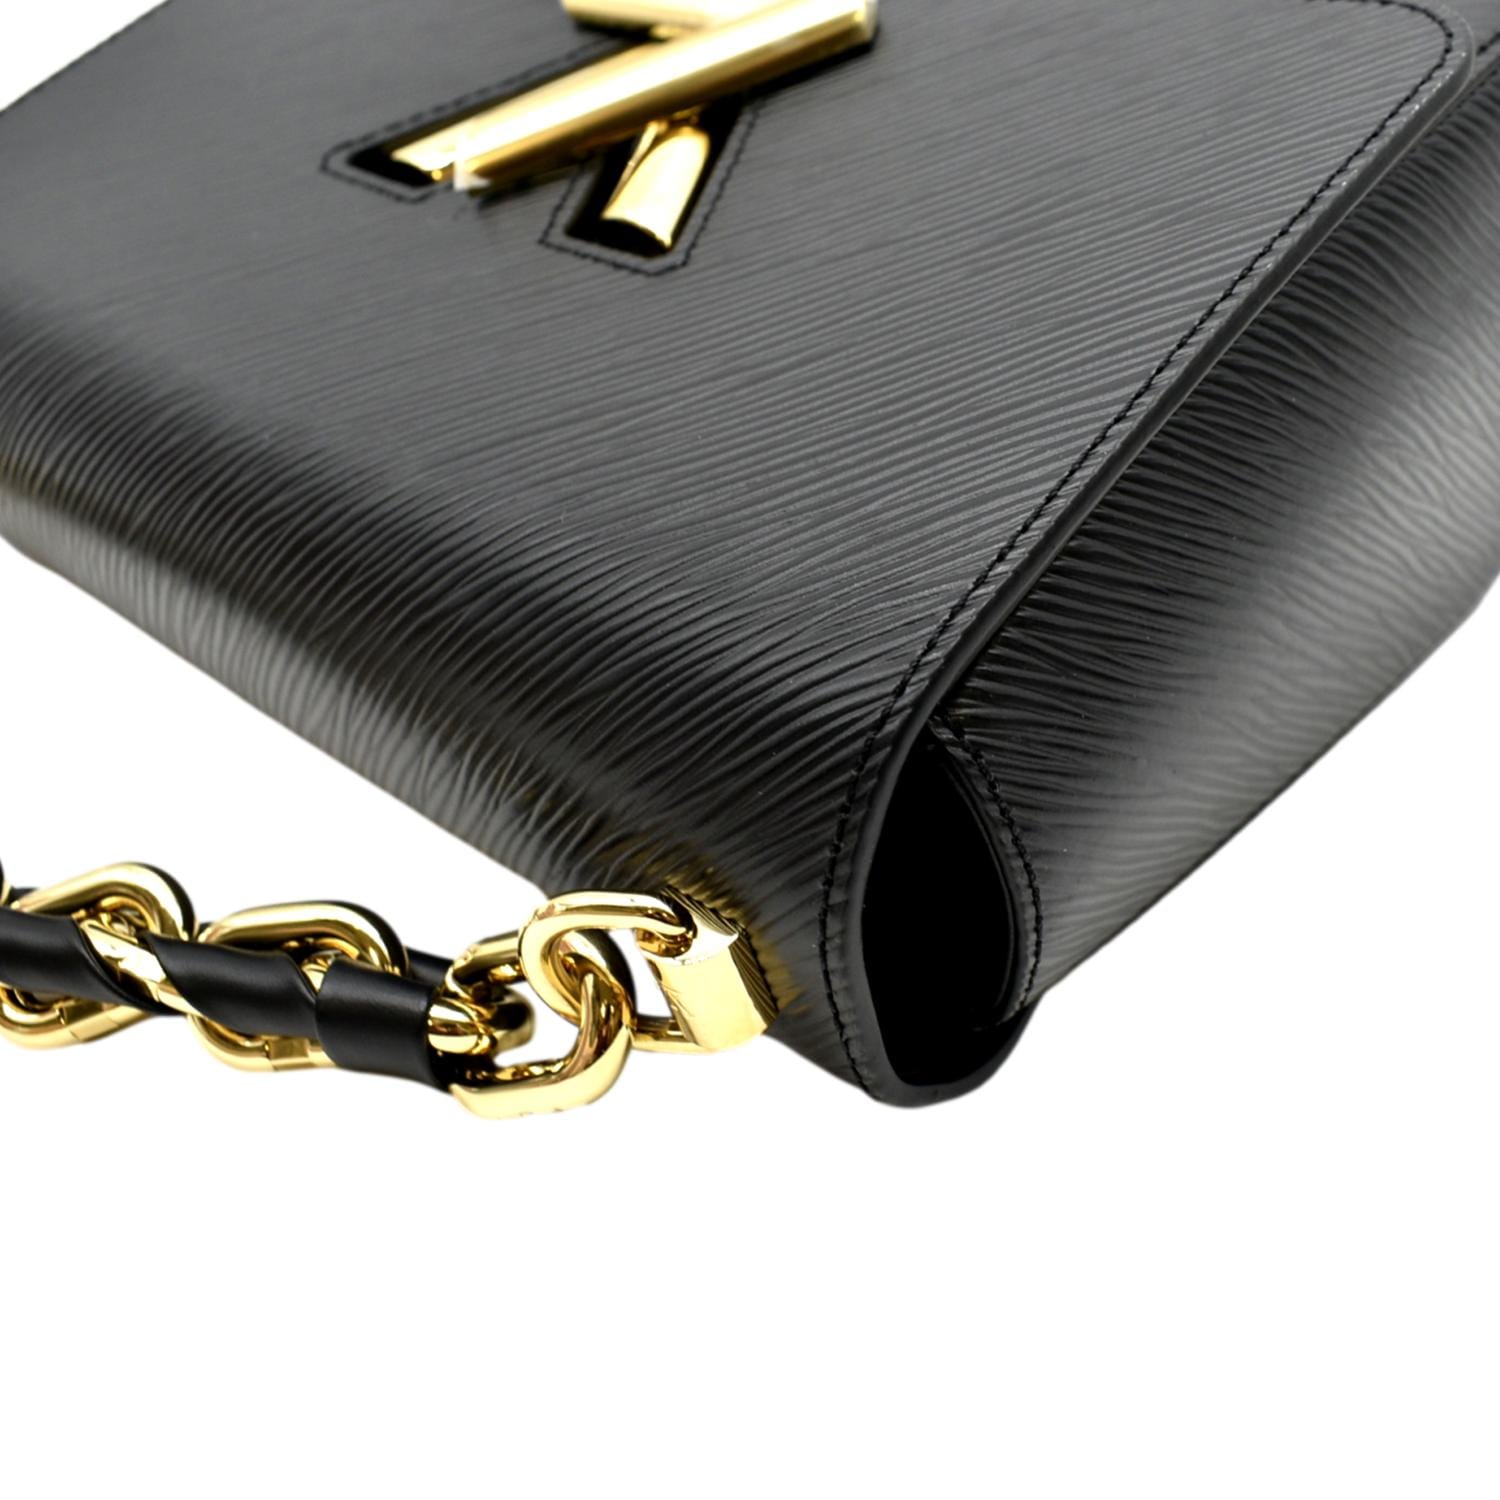 Louis Vuitton Black Leather Twist MM Shoulder Bag Louis Vuitton